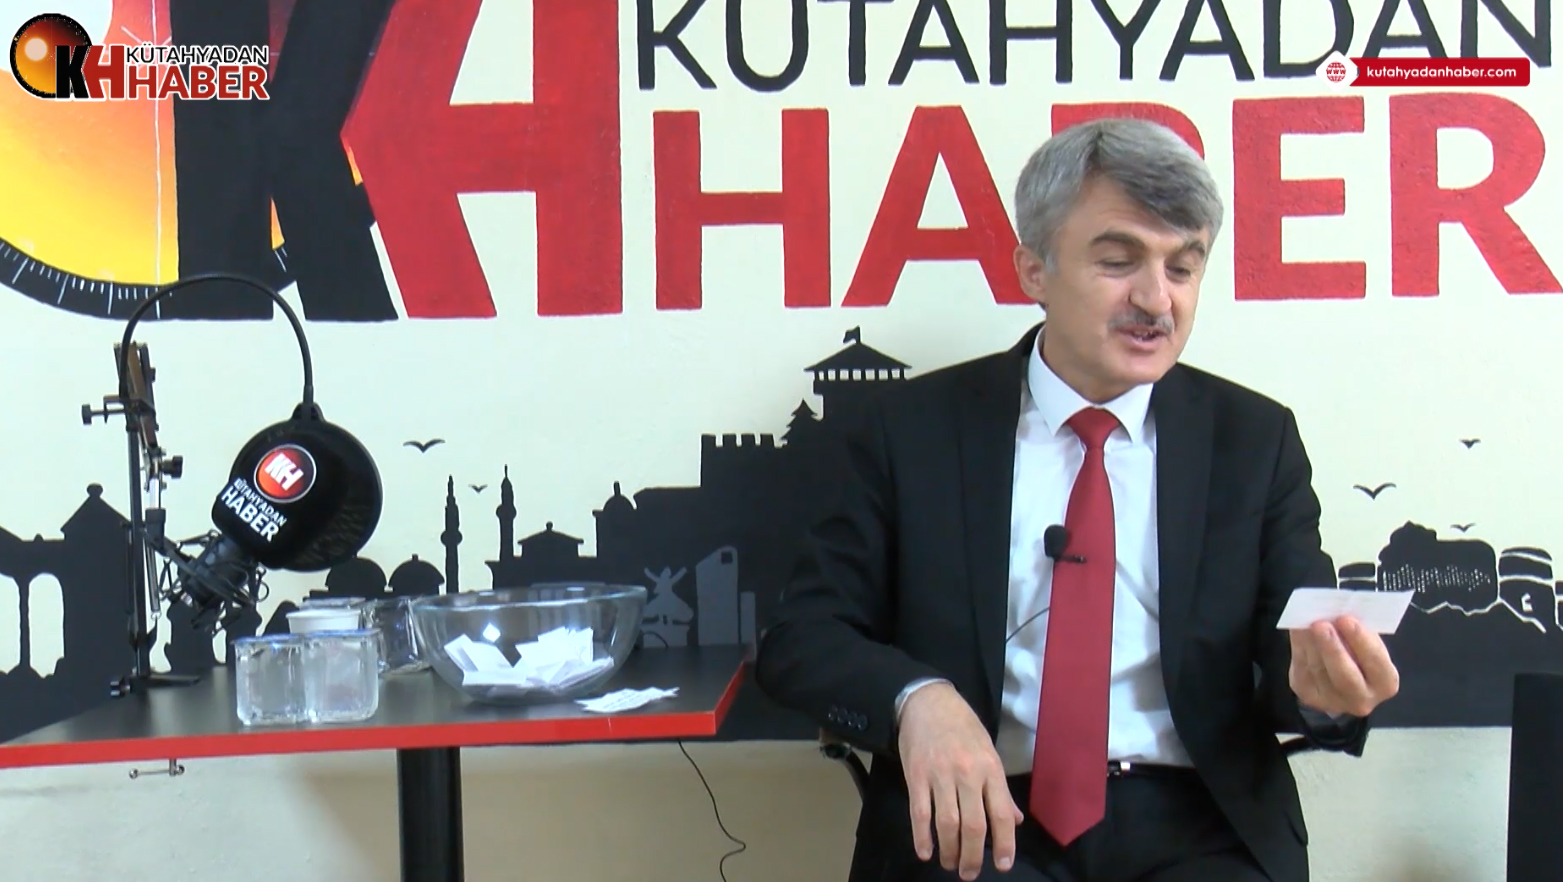 DPÜ Rektörü Prof. Dr. Kazım Uysal, Kütahya’dan Haber’in konuğu oldu